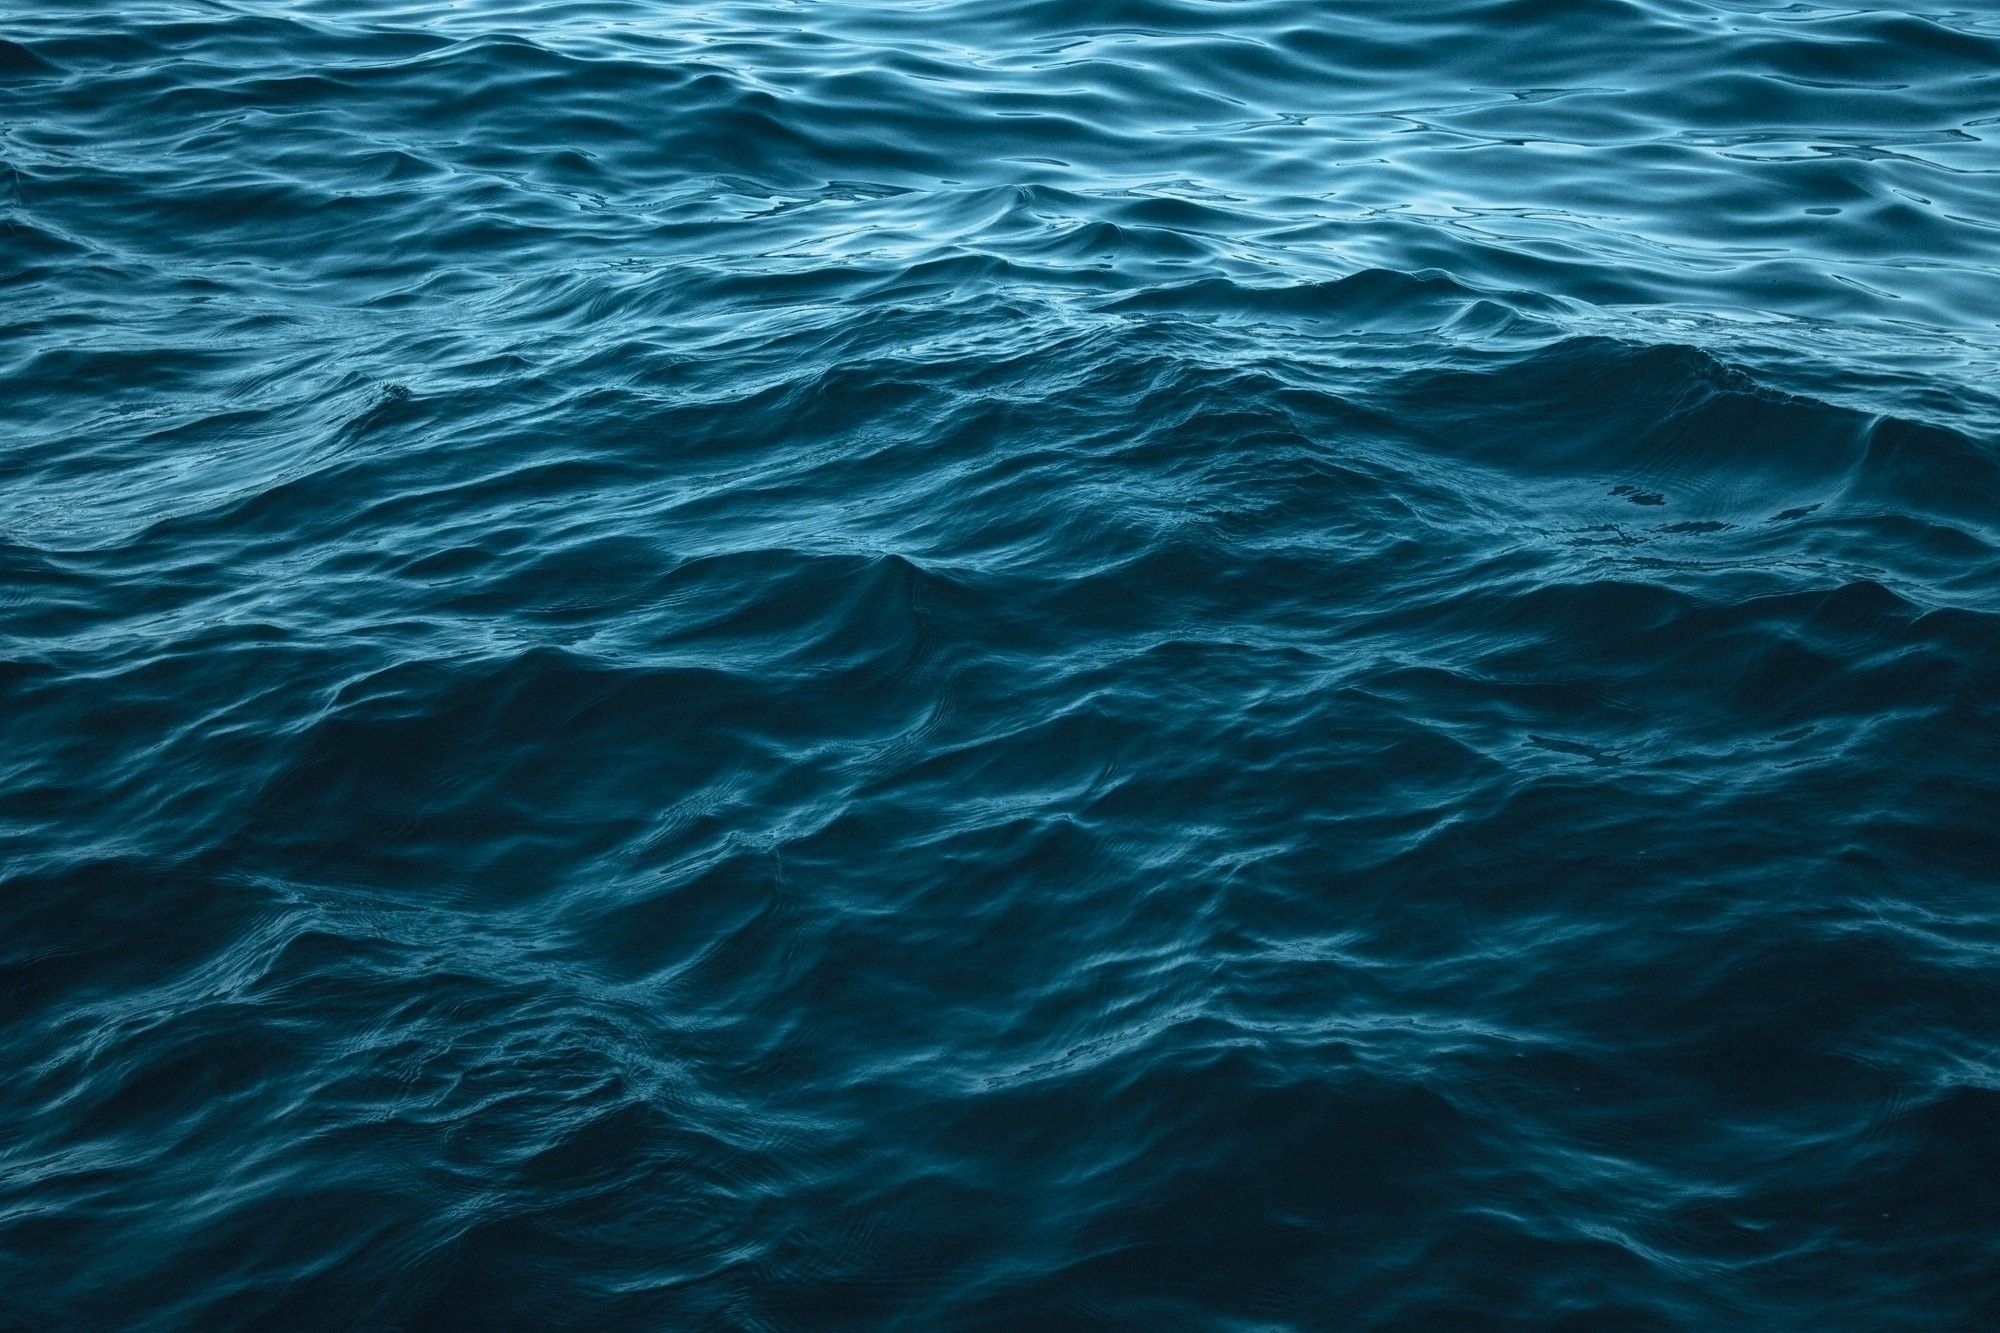 Fondos de agua del océano (más de 70 imágenes de fondo)